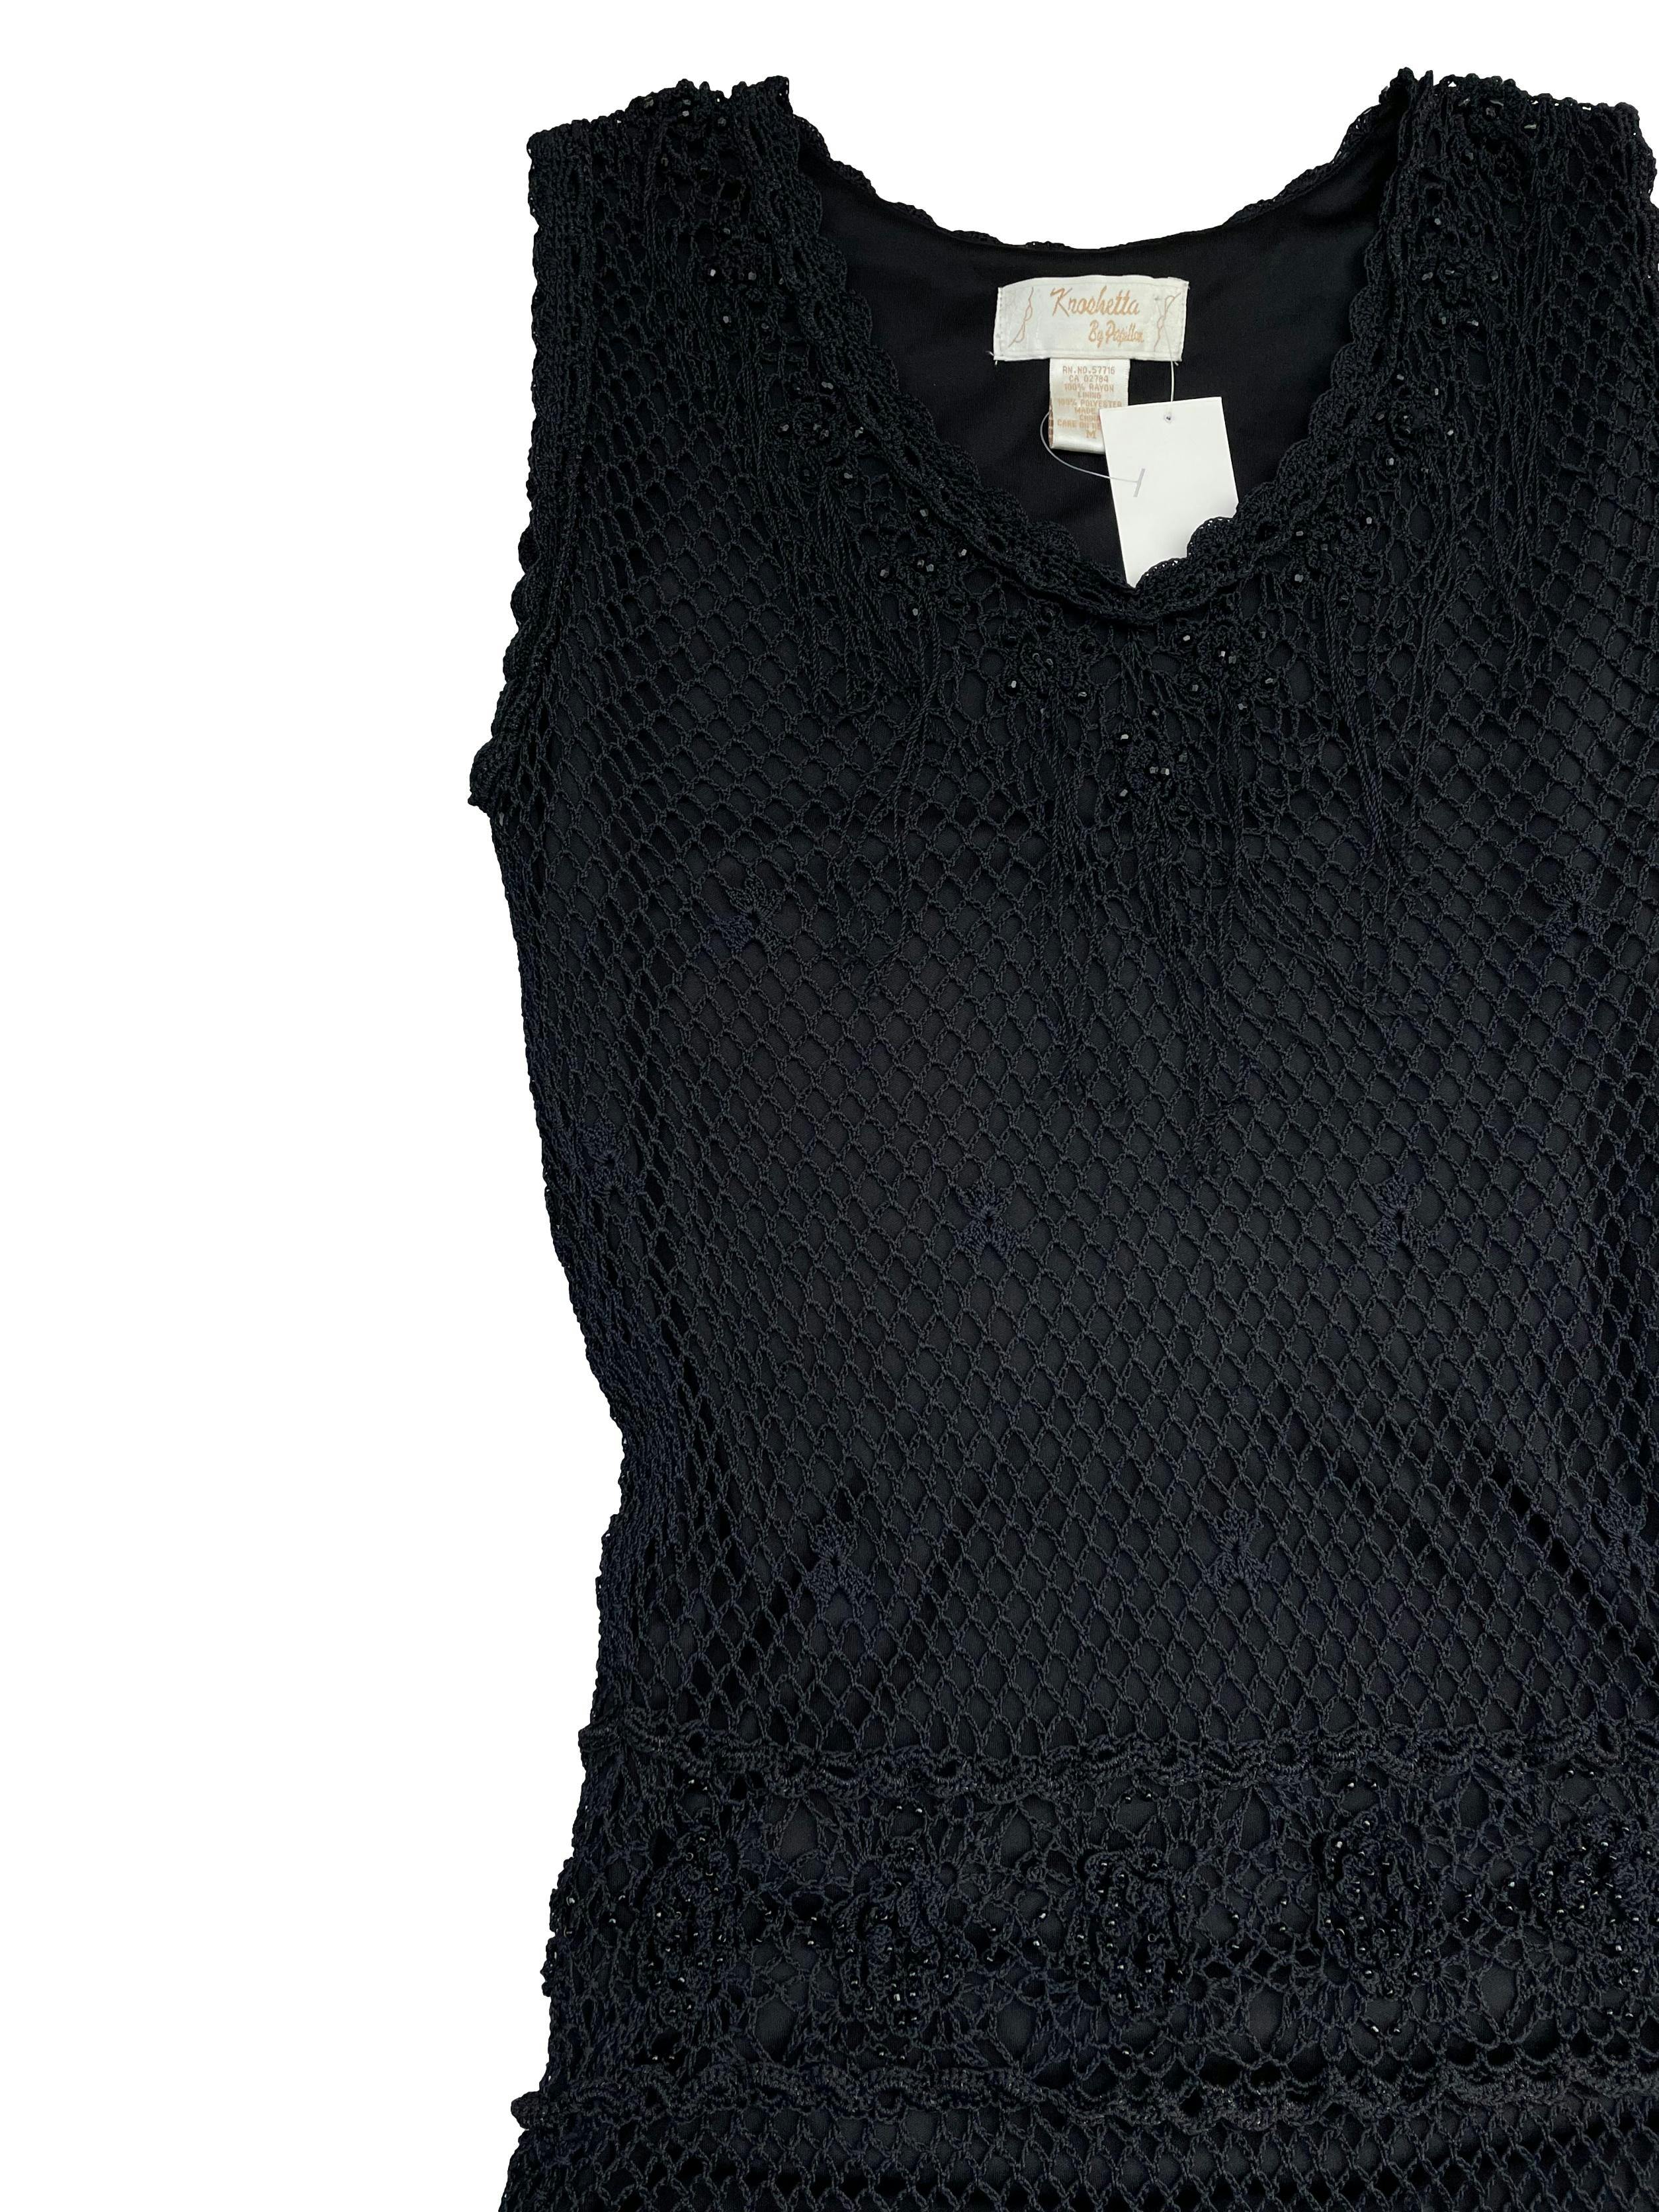 Vestido maxi Kroshetta negra tejido crochet, con mostacillas aplicadas, forrado, se adapta al cuerpo. Largo 135cm. Nuevo